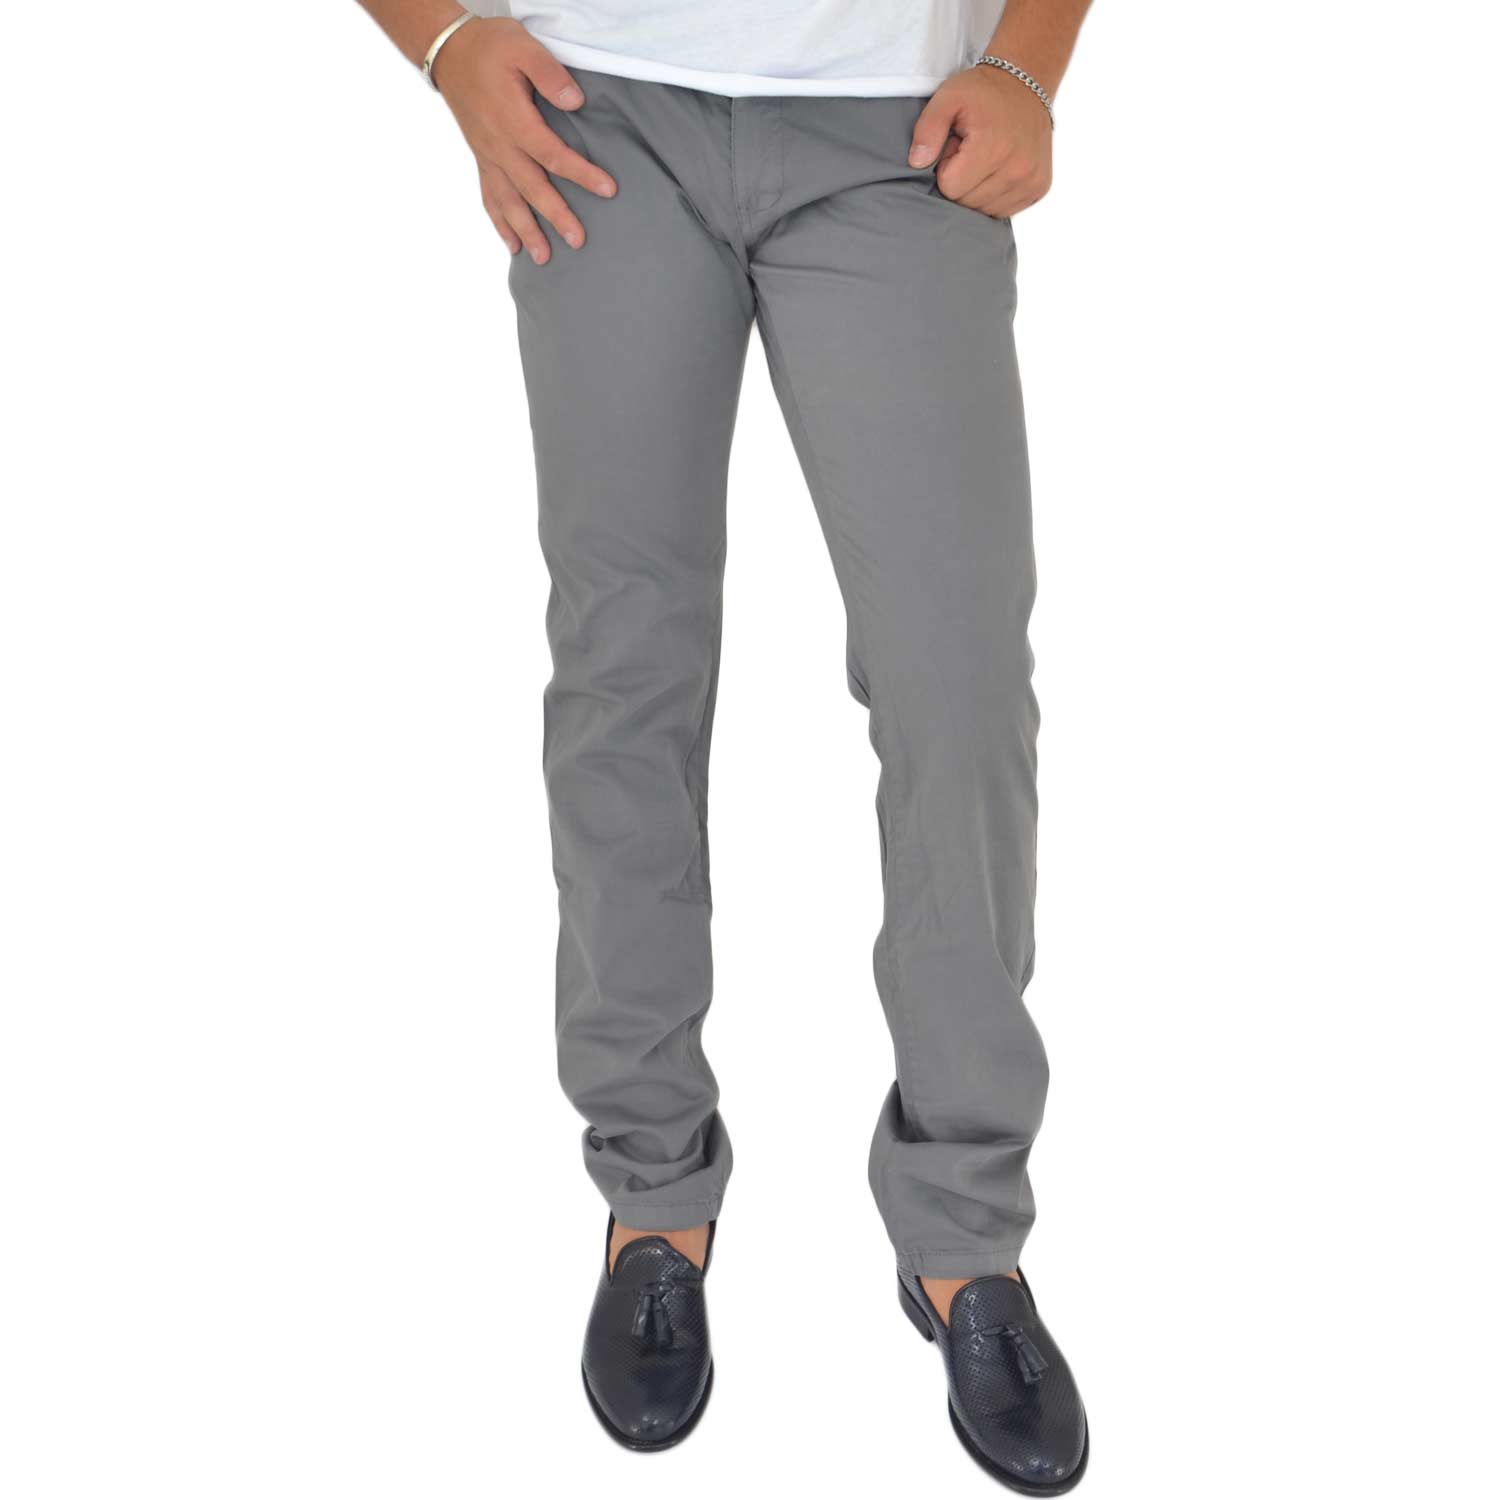 Pantaloni grigio cotone, Skinny Fit con tasca americana . Chiusura con bottone e cerniera..